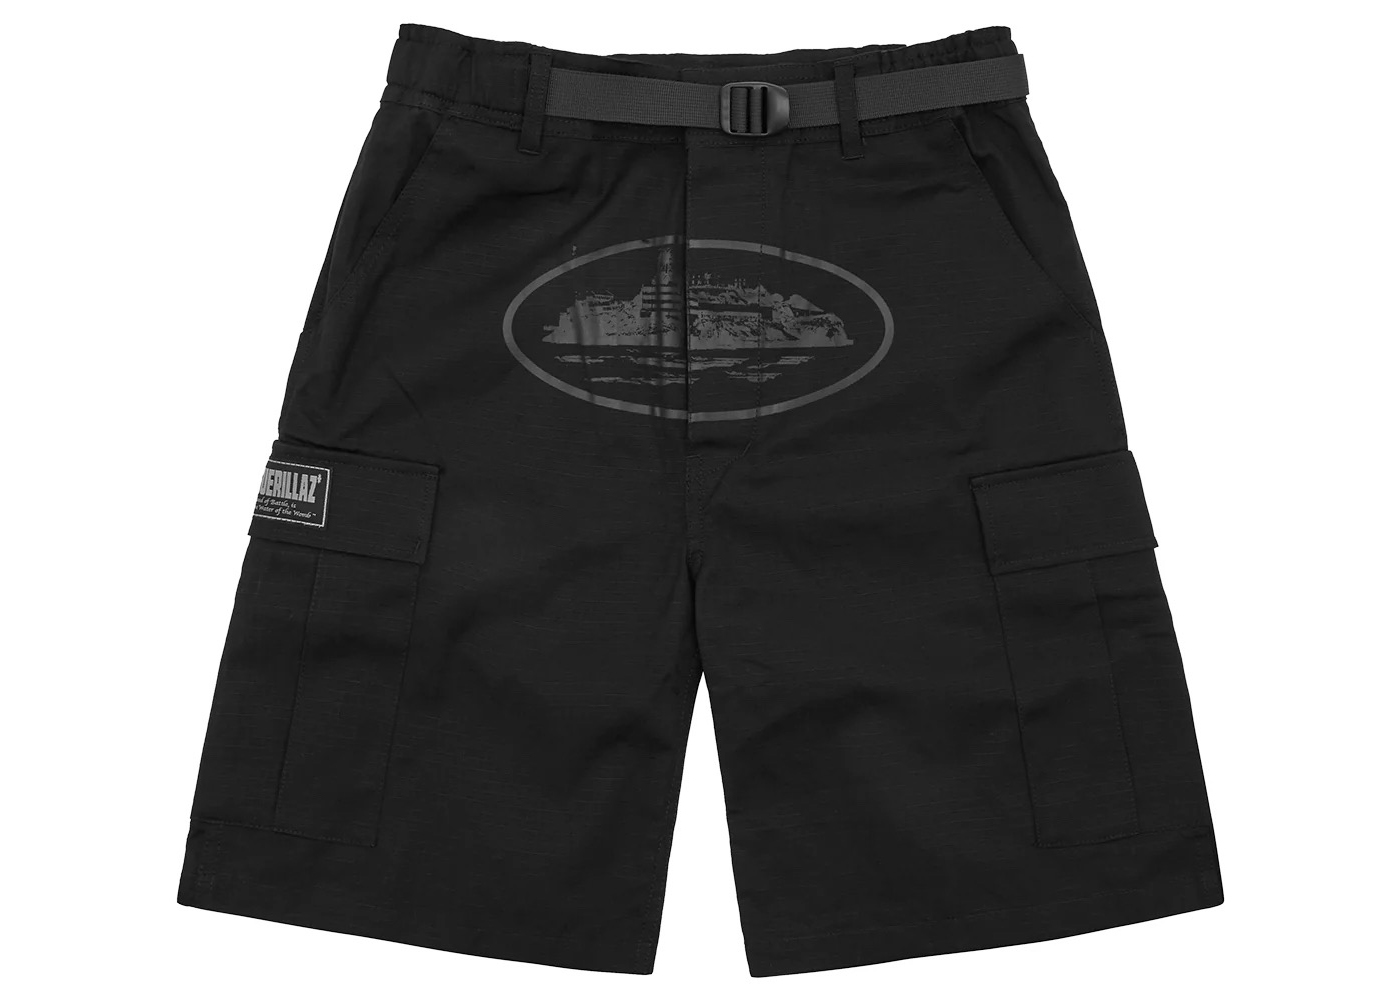 9,890円Corteiz Cargo Shorts Black / White